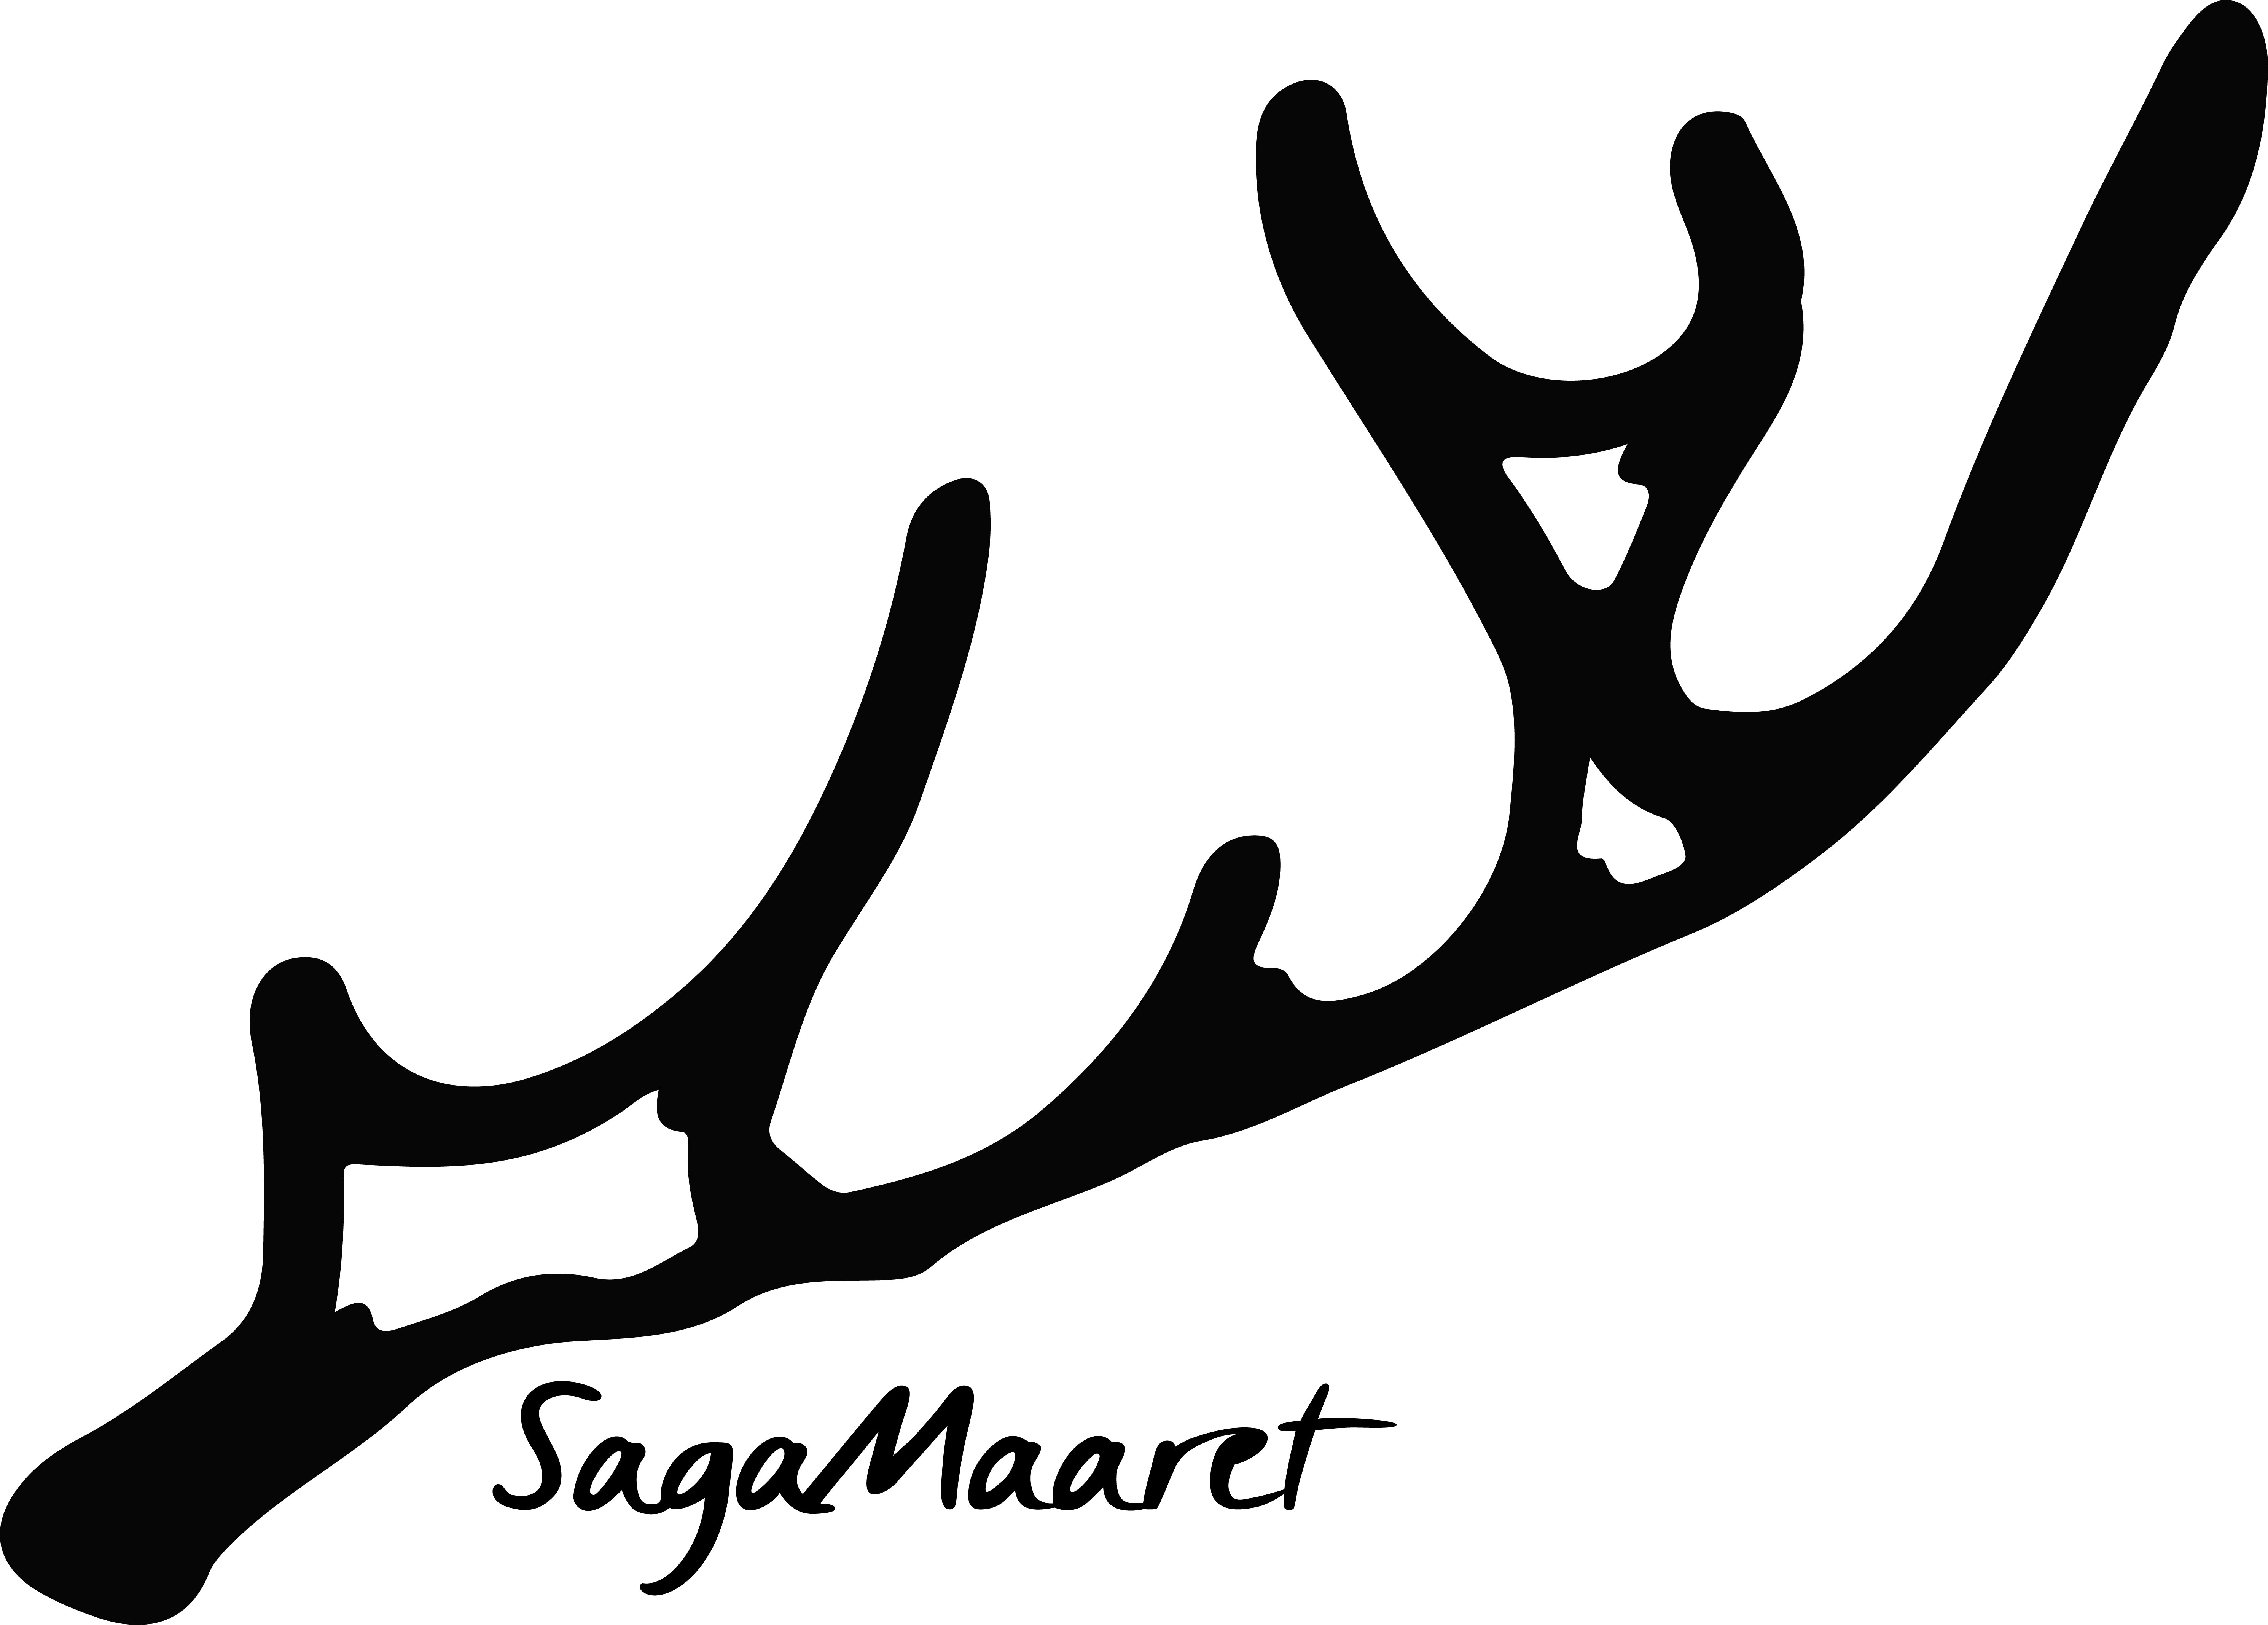 SagaMaaret